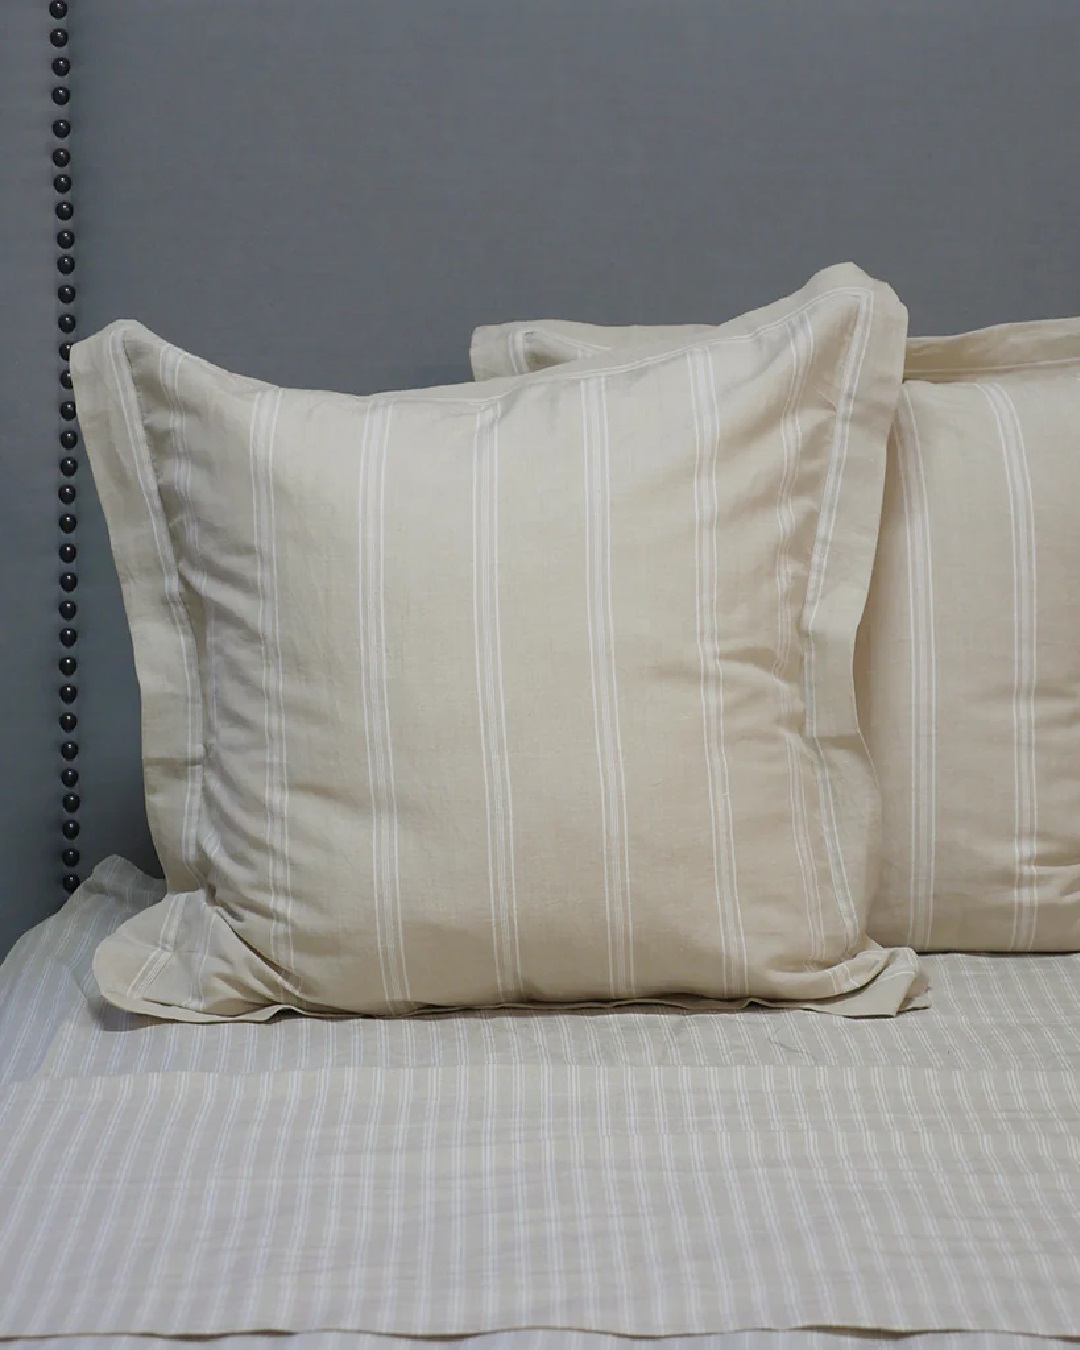 Off white striped Euro pillowcase on bed